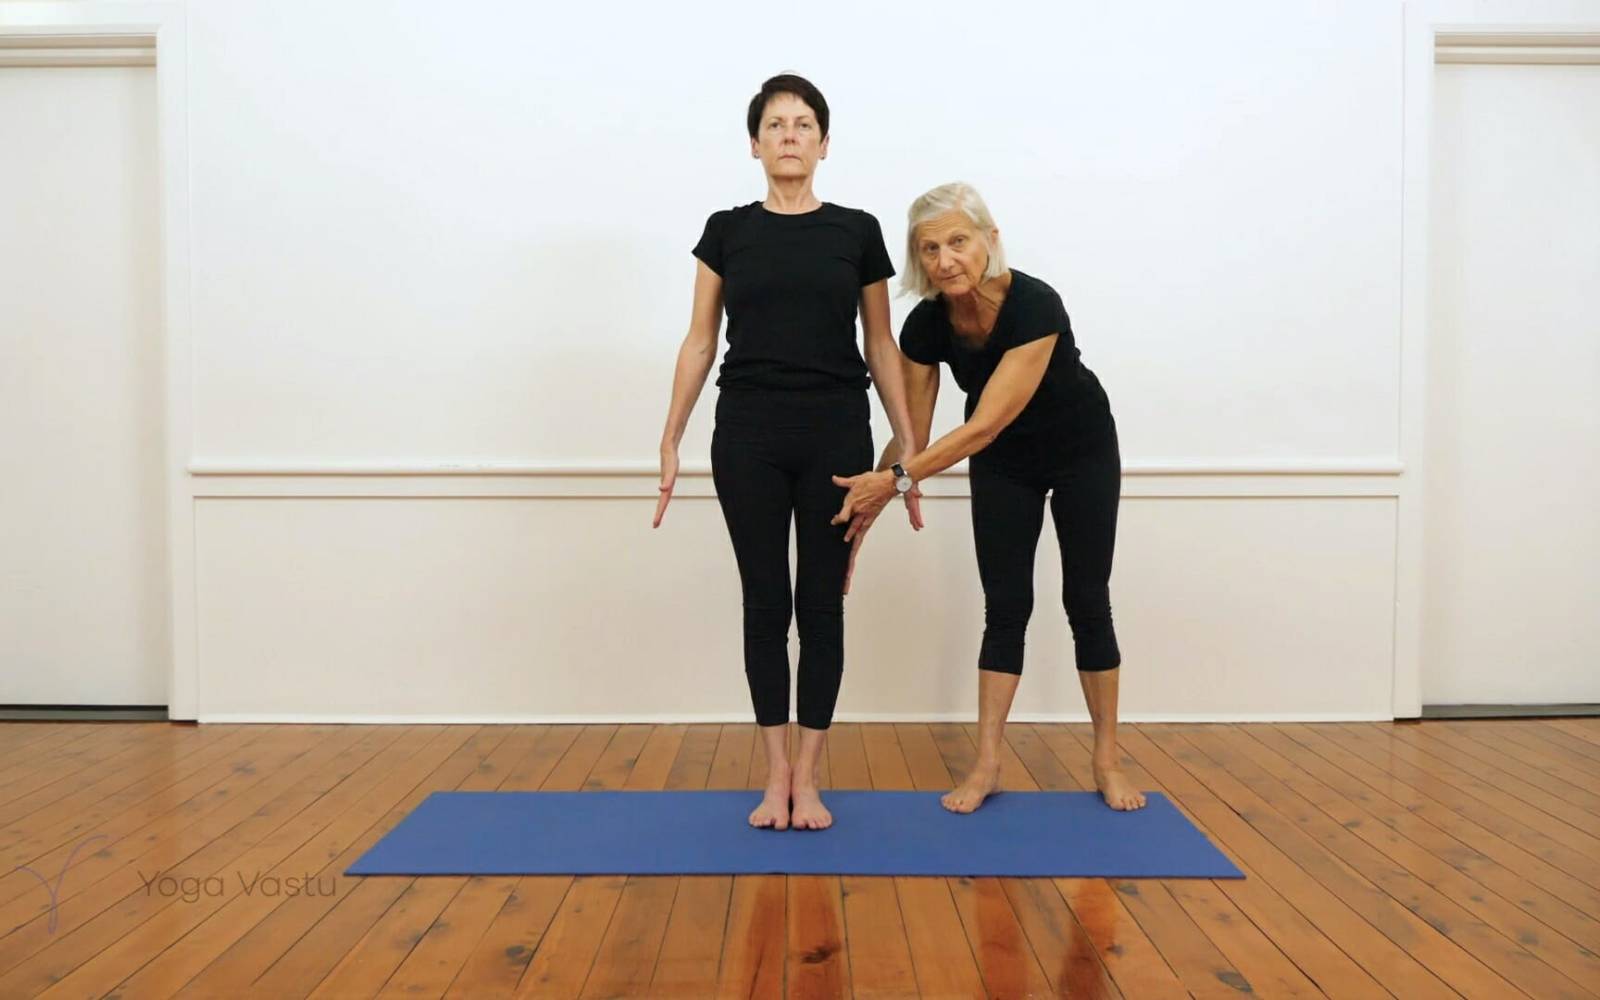 Woman Yoga Exercices Tadasana Mountain Pose Stock Image - Image of tadasana,  workout: 174251571